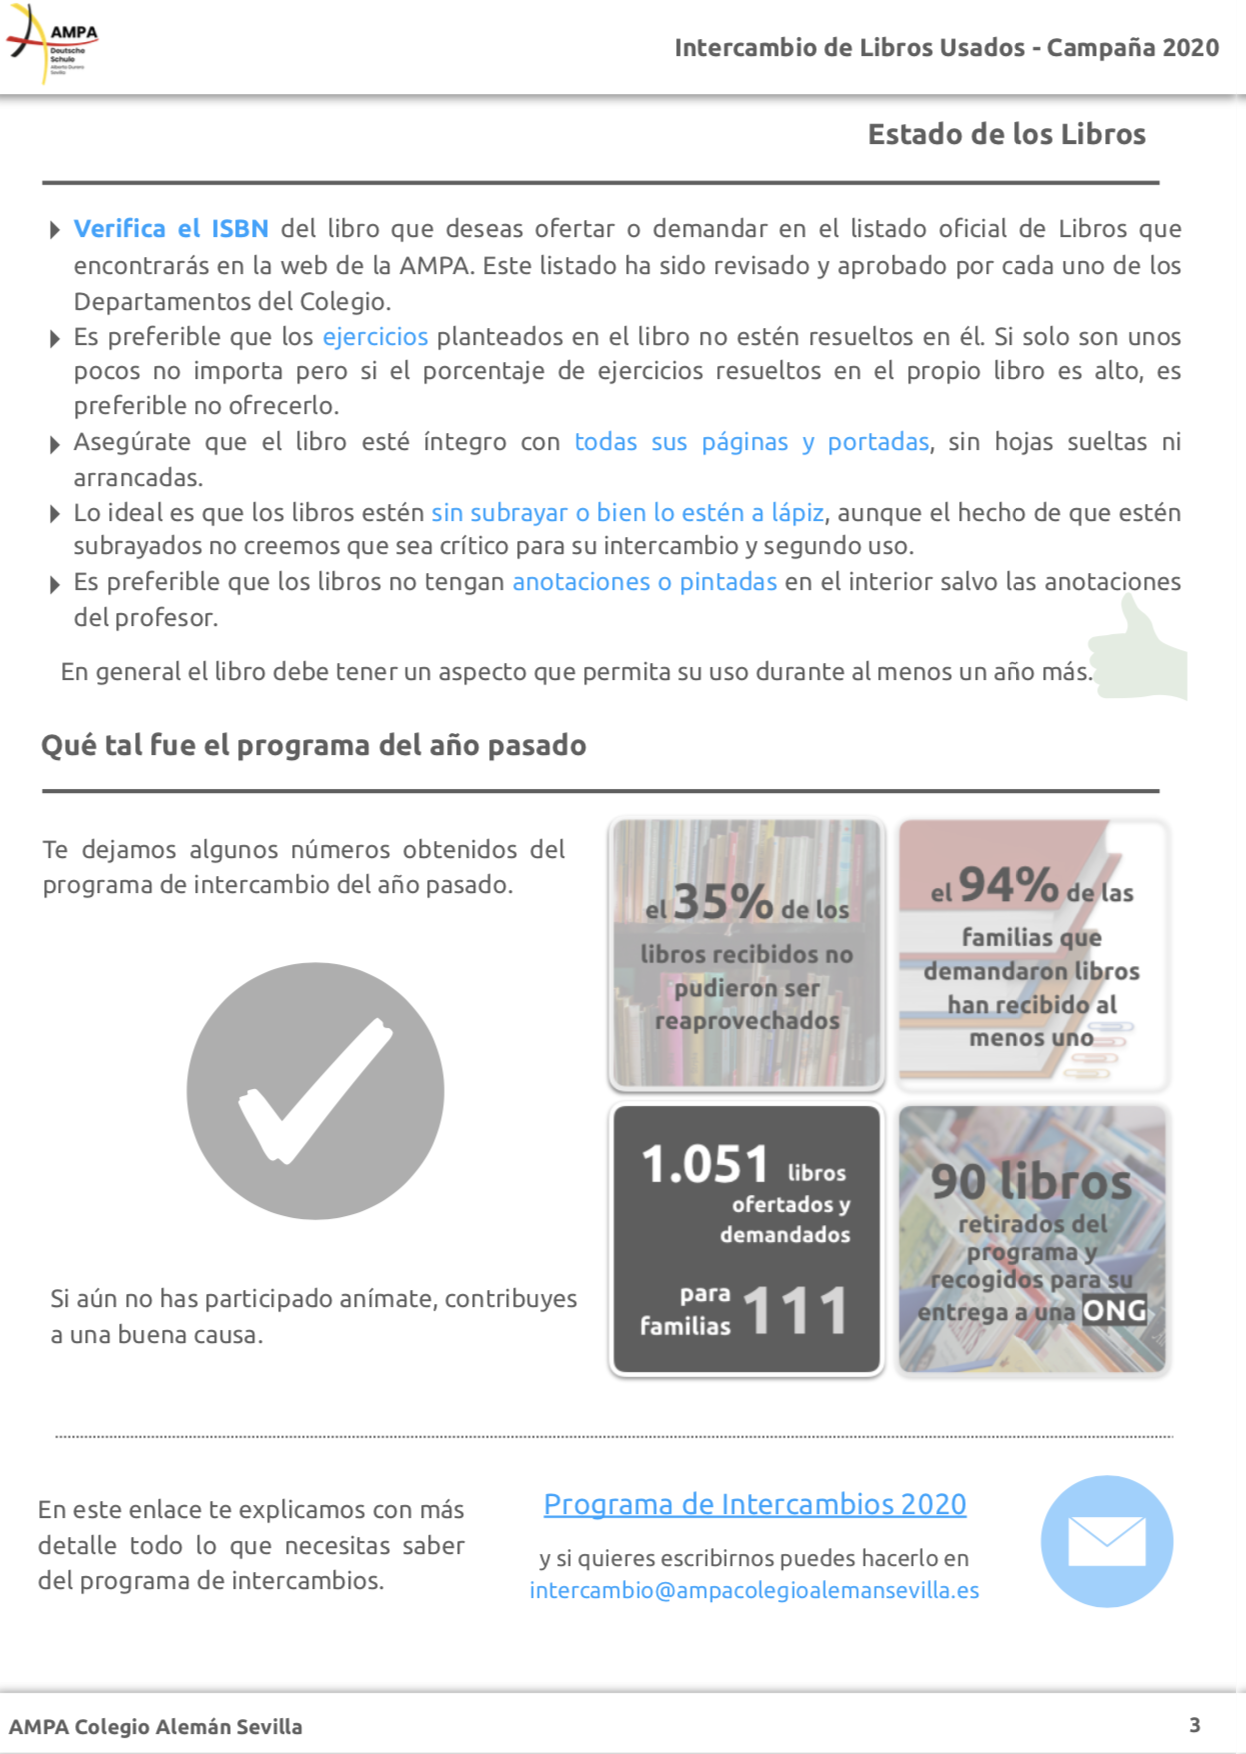 PROGRAMA INTERCAMBIO DE LIBROS USADOS: CAMPAÑA 2020